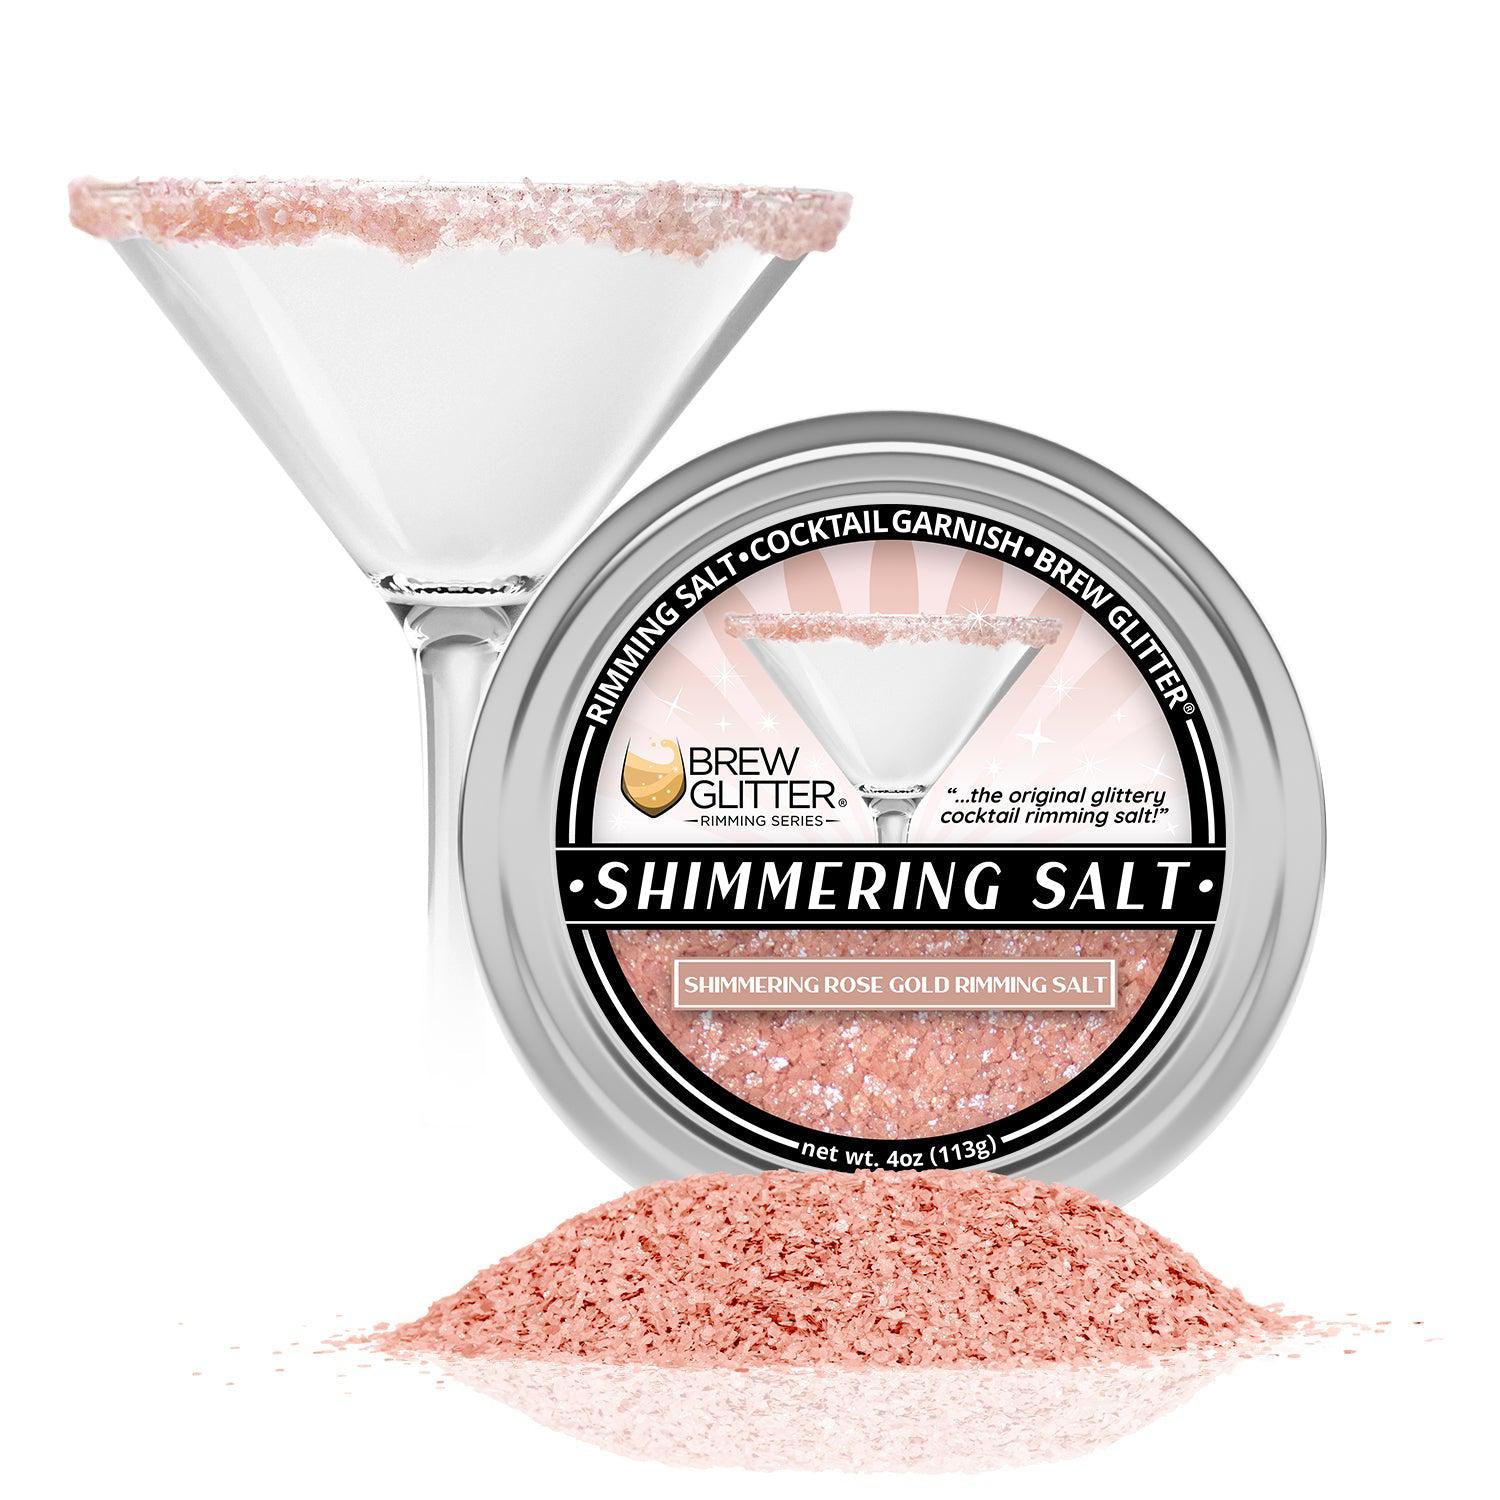 Shimmering Rose Gold Cocktail Rimming Salt